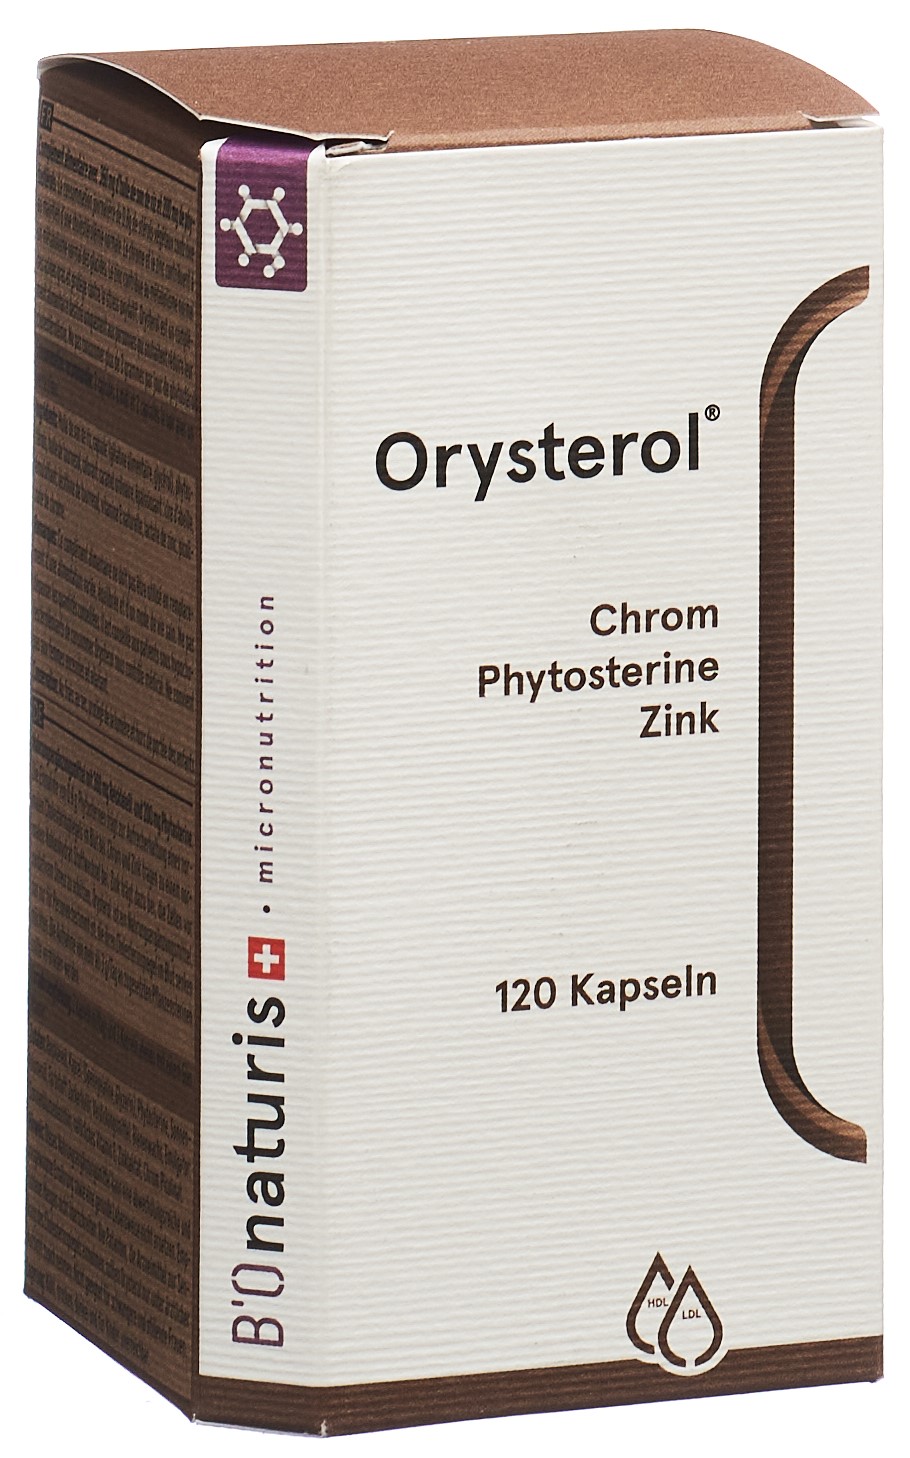 BIONATURIS Orysterol Reisklei Kaps 360 mg 120 Stk